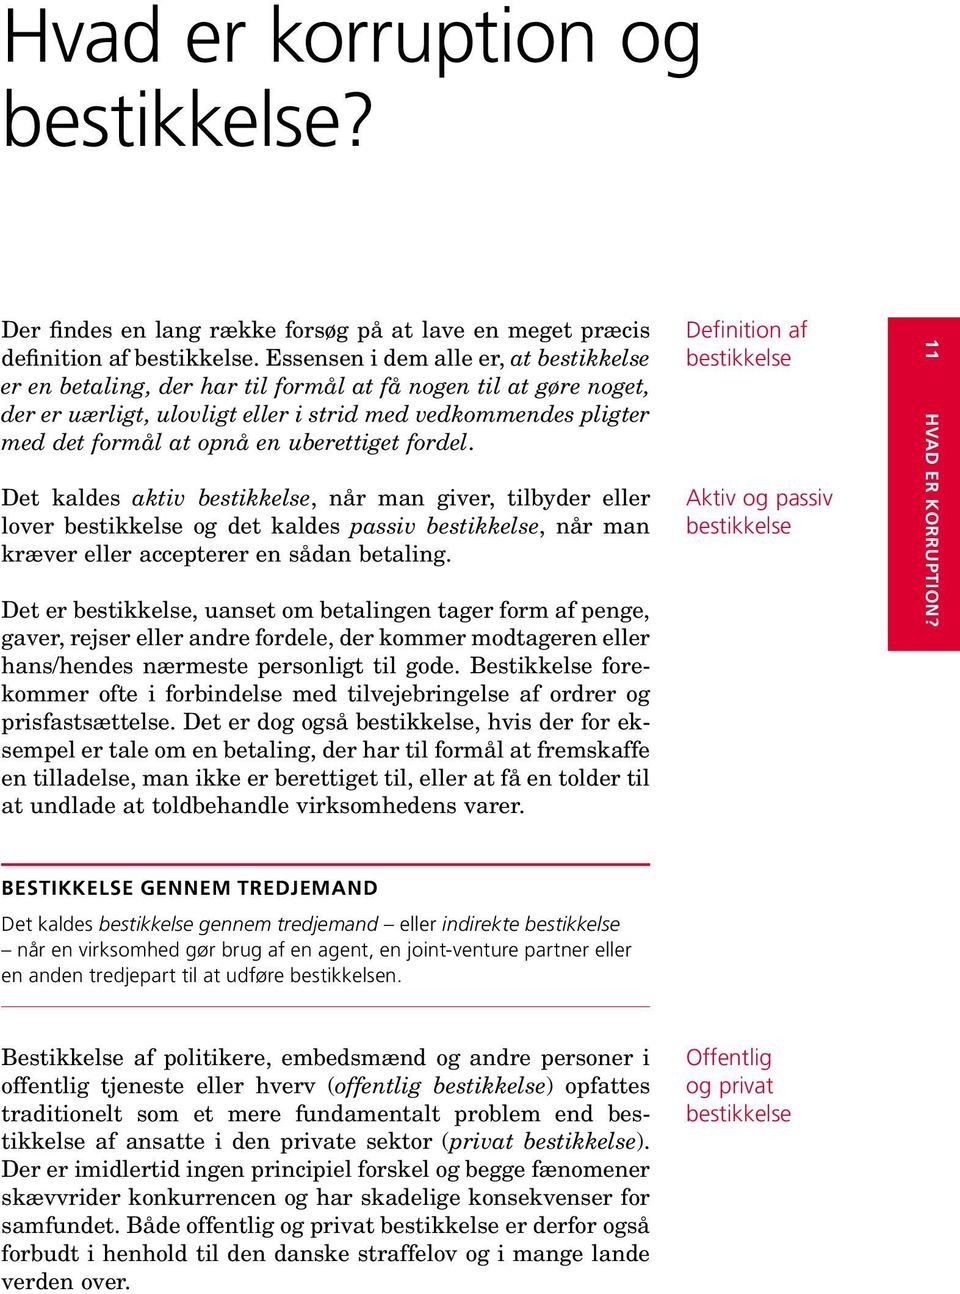 Undgå Korruption. en guide for virksomheder - PDF Gratis download